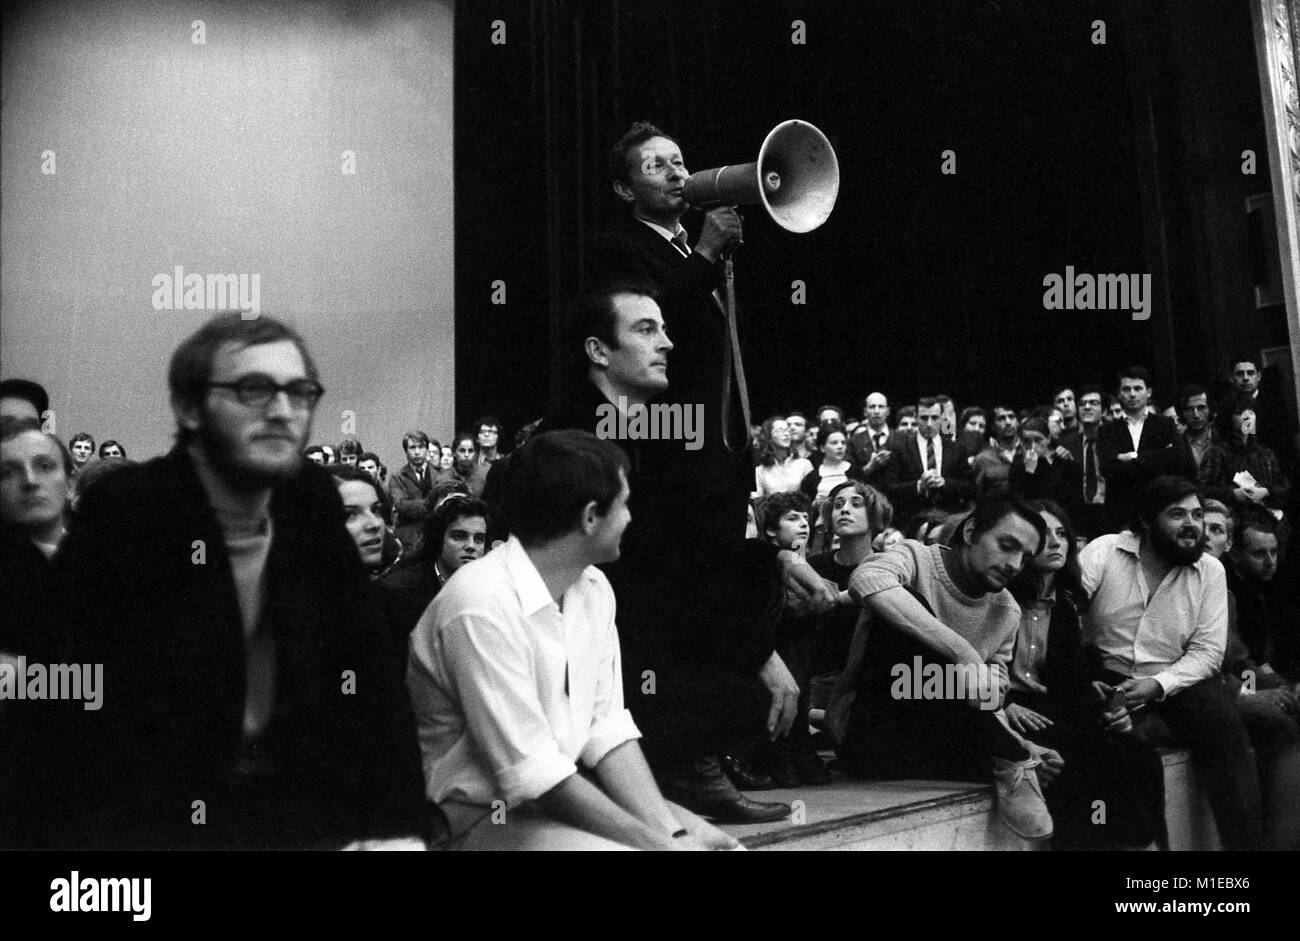 Philippe Gras / Le Pictorium - Mai 68 - 1968 - France / Ile-de-France (région) / Paris - Jean-Louis Barrault, au Théâtre de l'Odéon, 1968 Banque D'Images